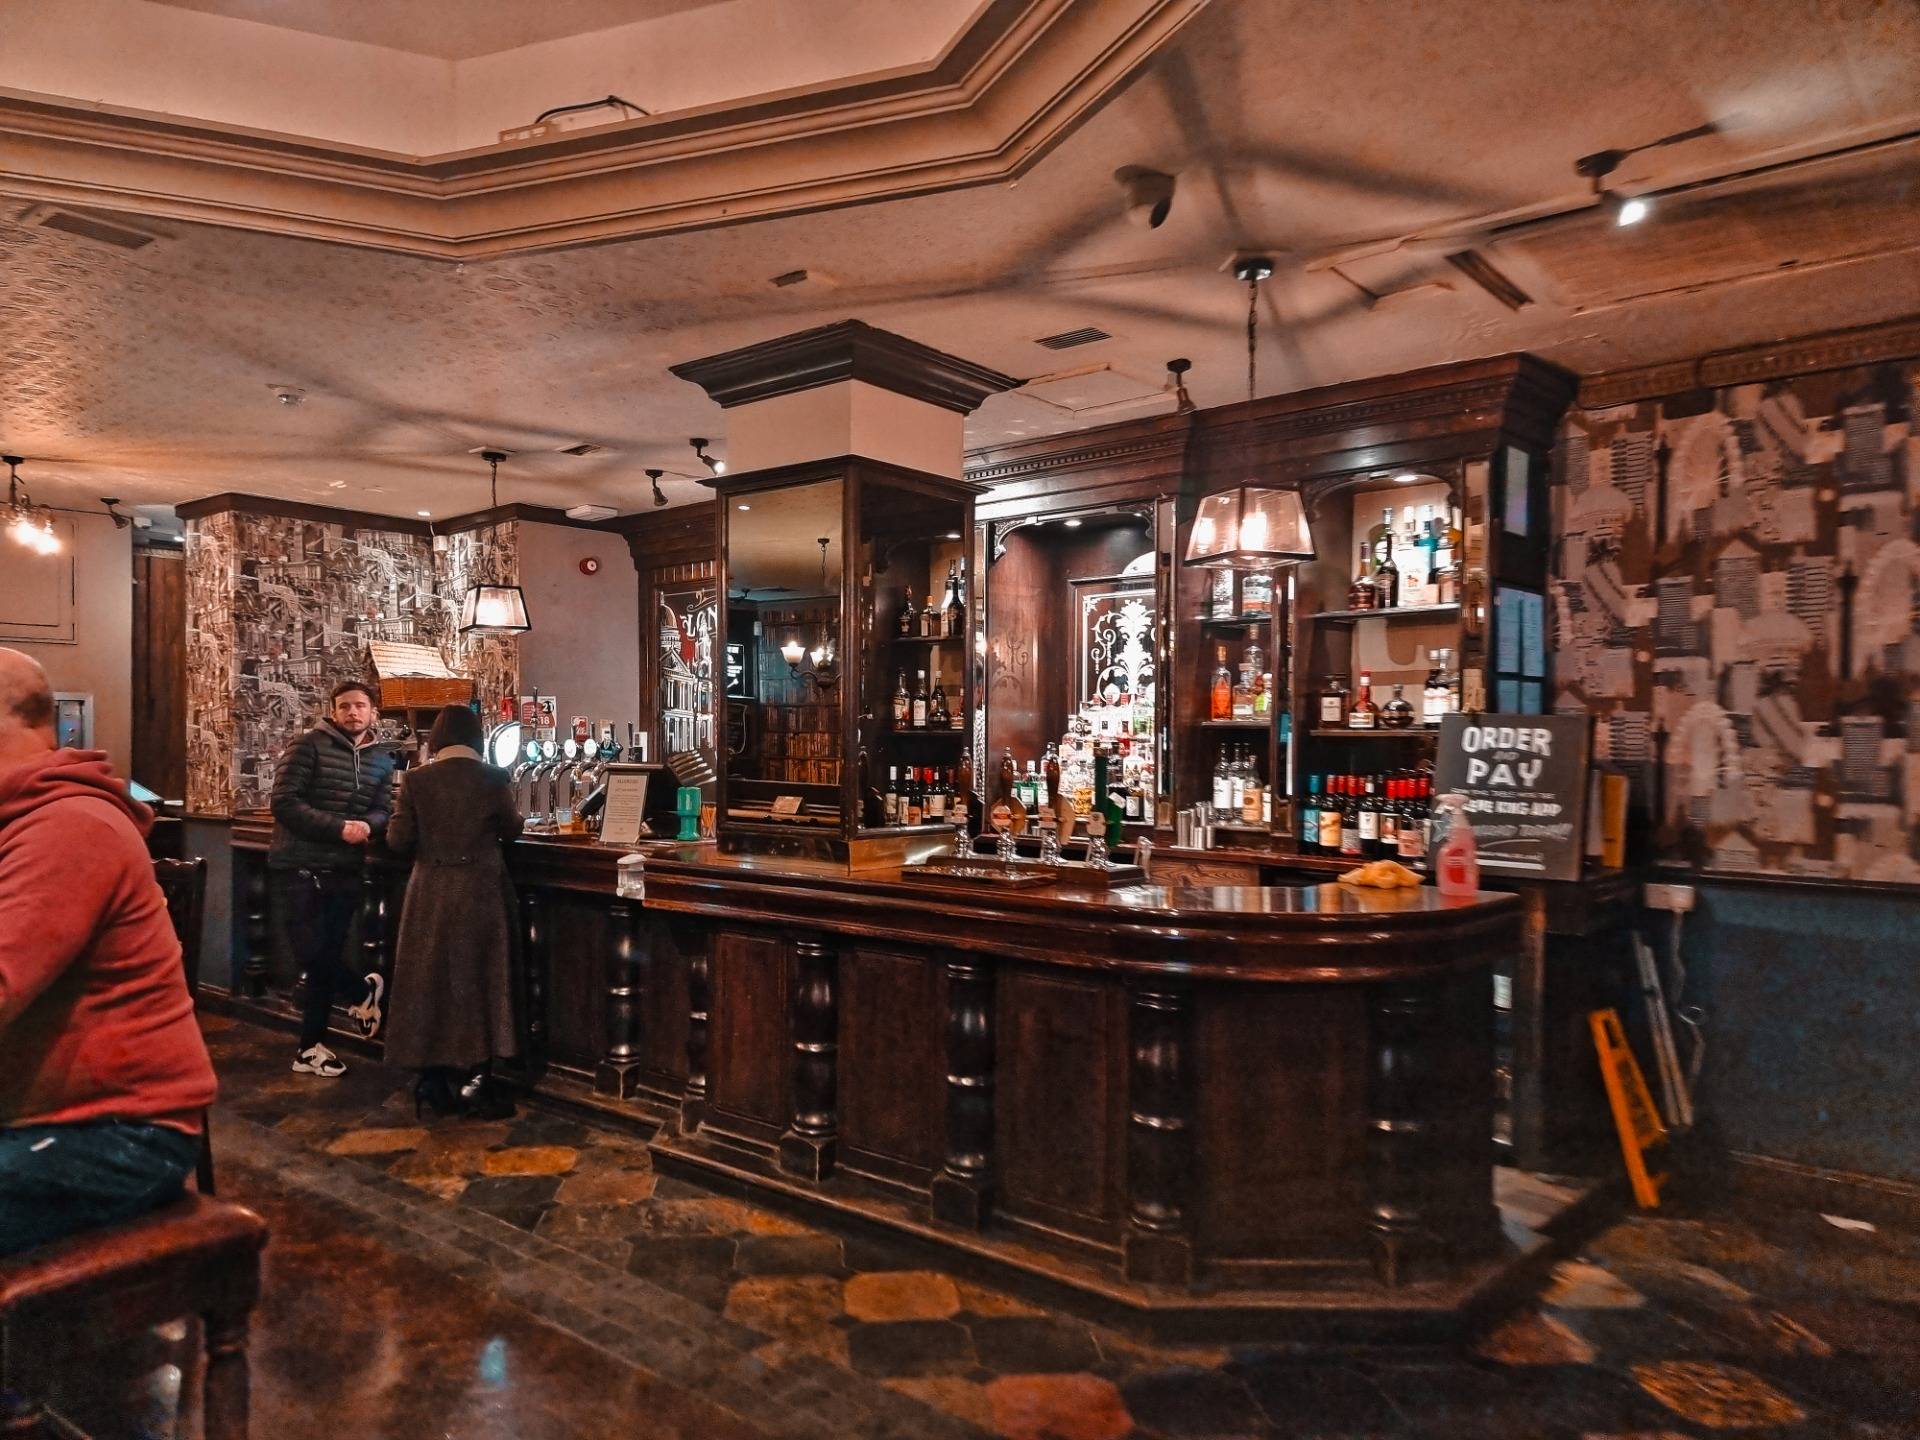 The bar on the ground floor.